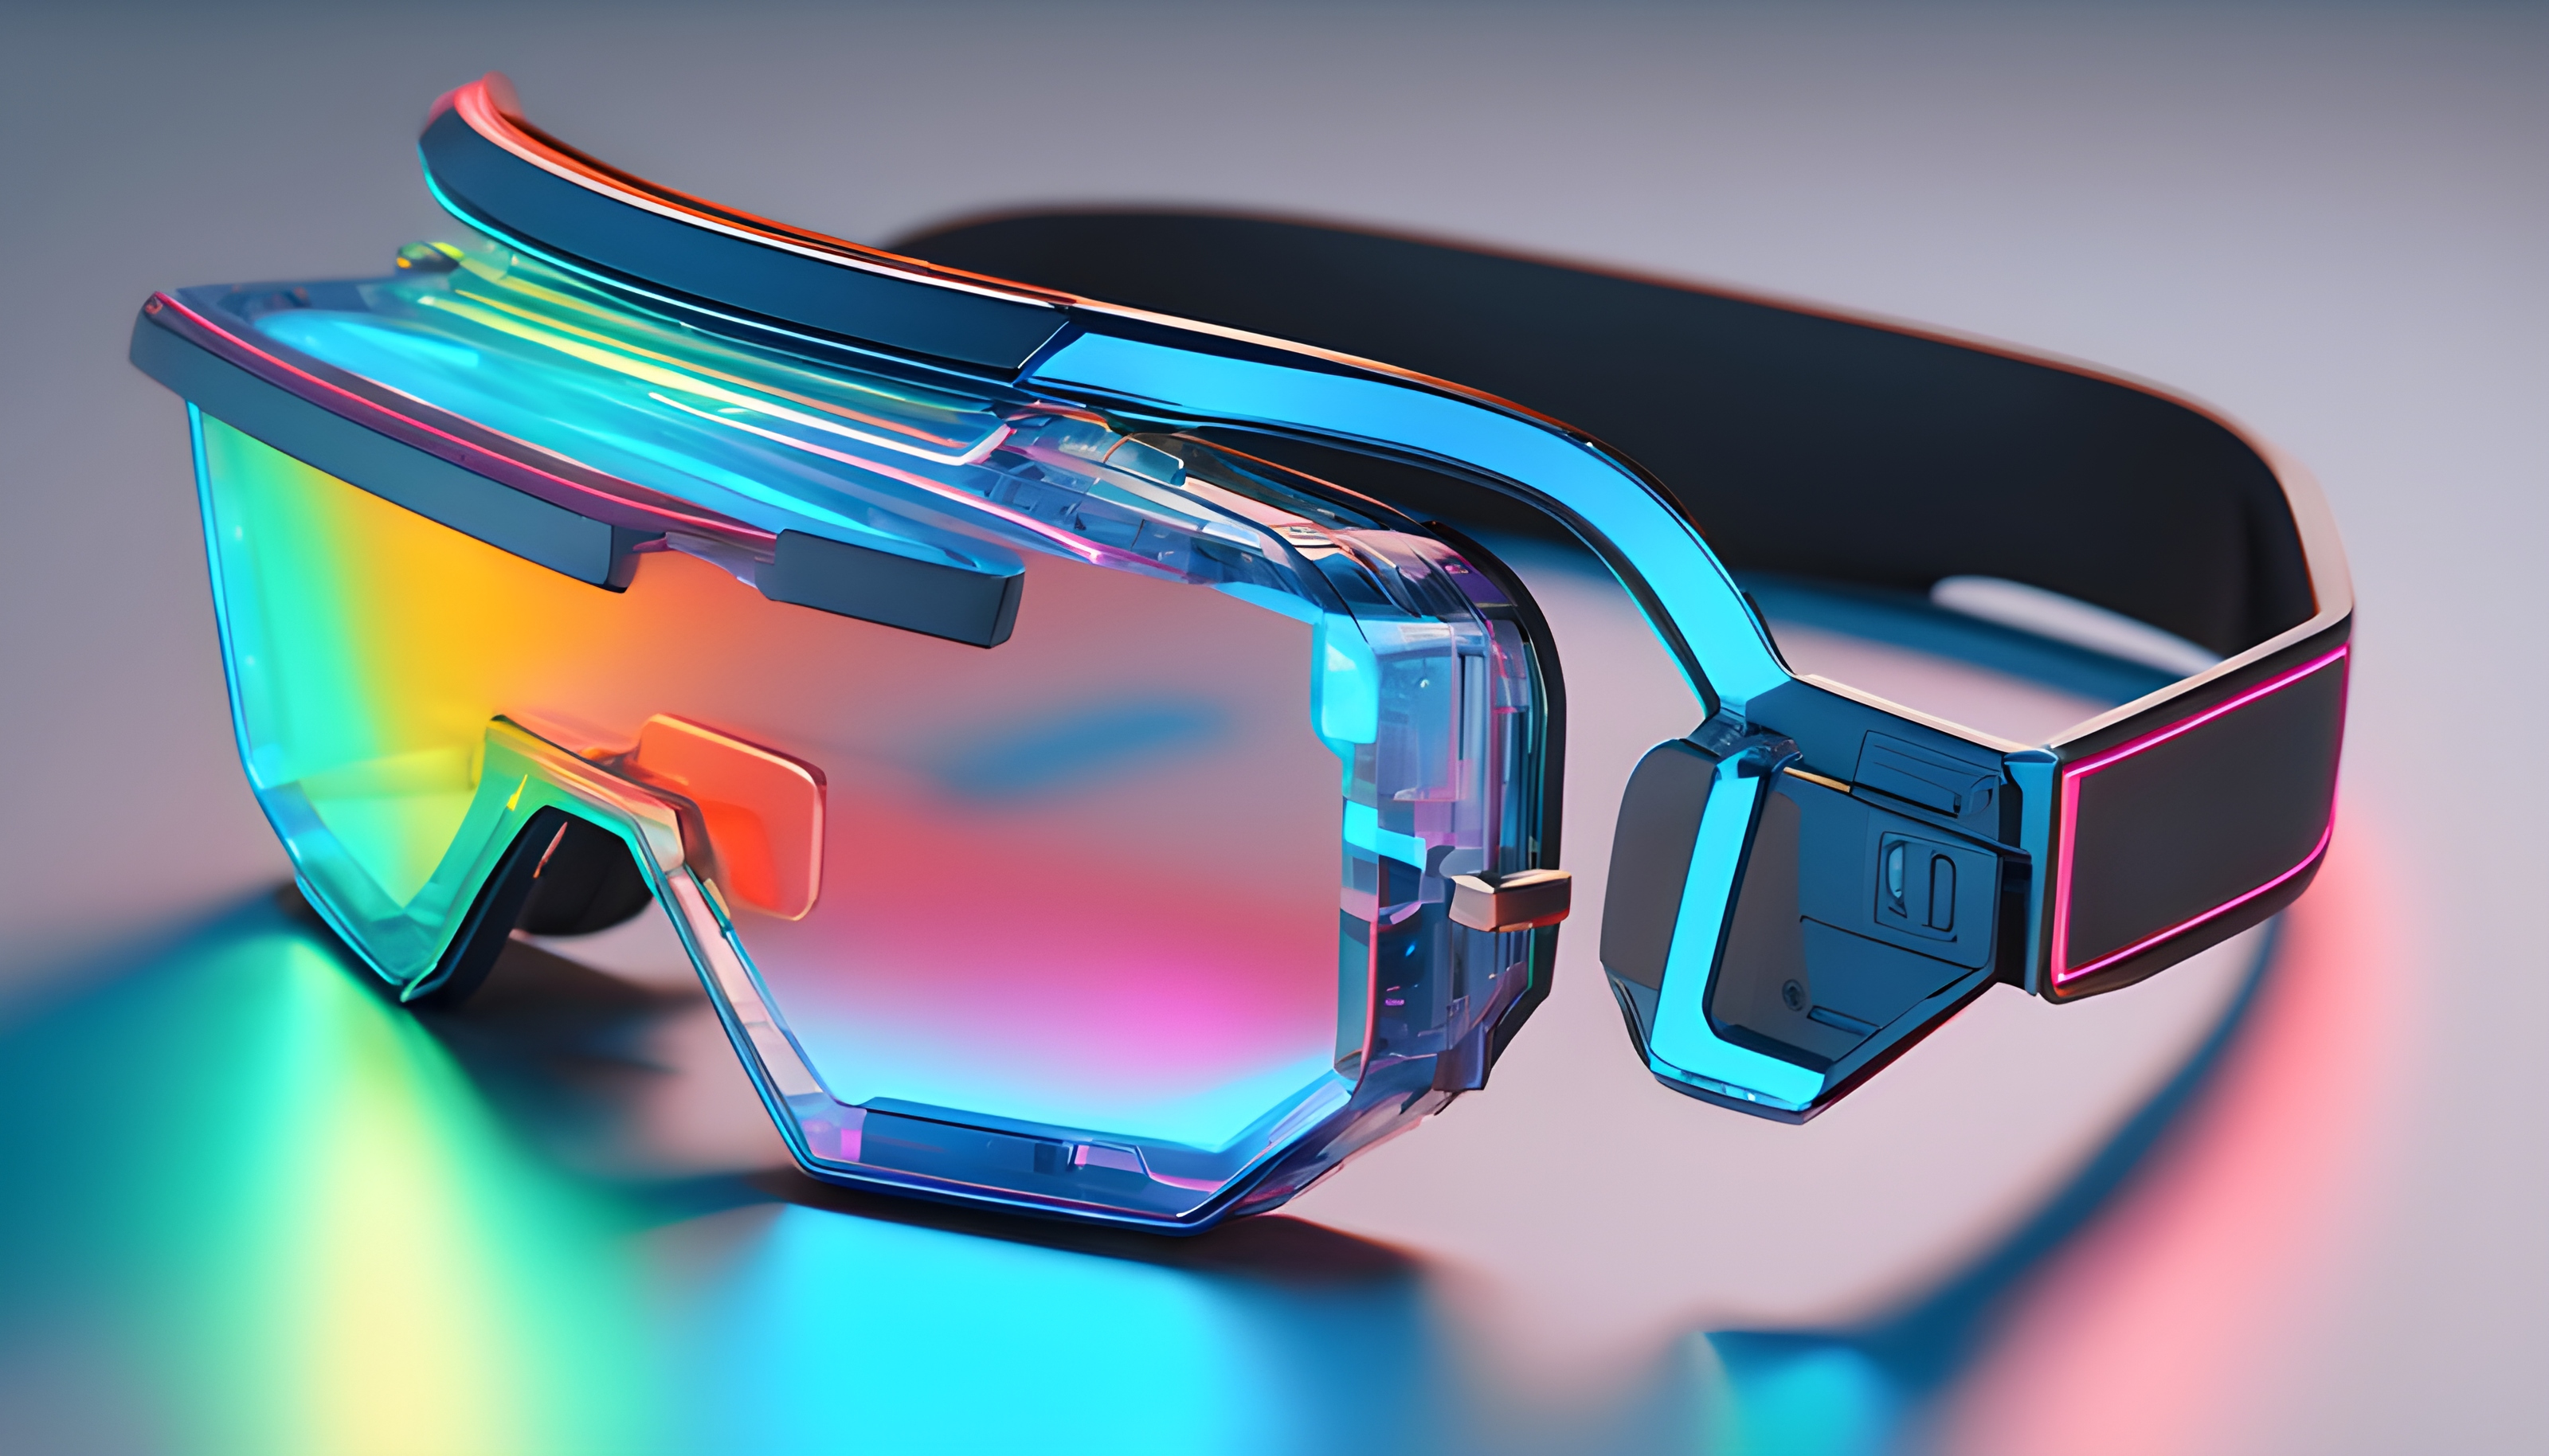 สร้างภาพเรนเดอร์ 3D แว่นตาอัจฉริยะ เลนส์ฉายภาพโฮโลแกรม ดีไซน์ล้ำสมัยแบบ Sci-Fi